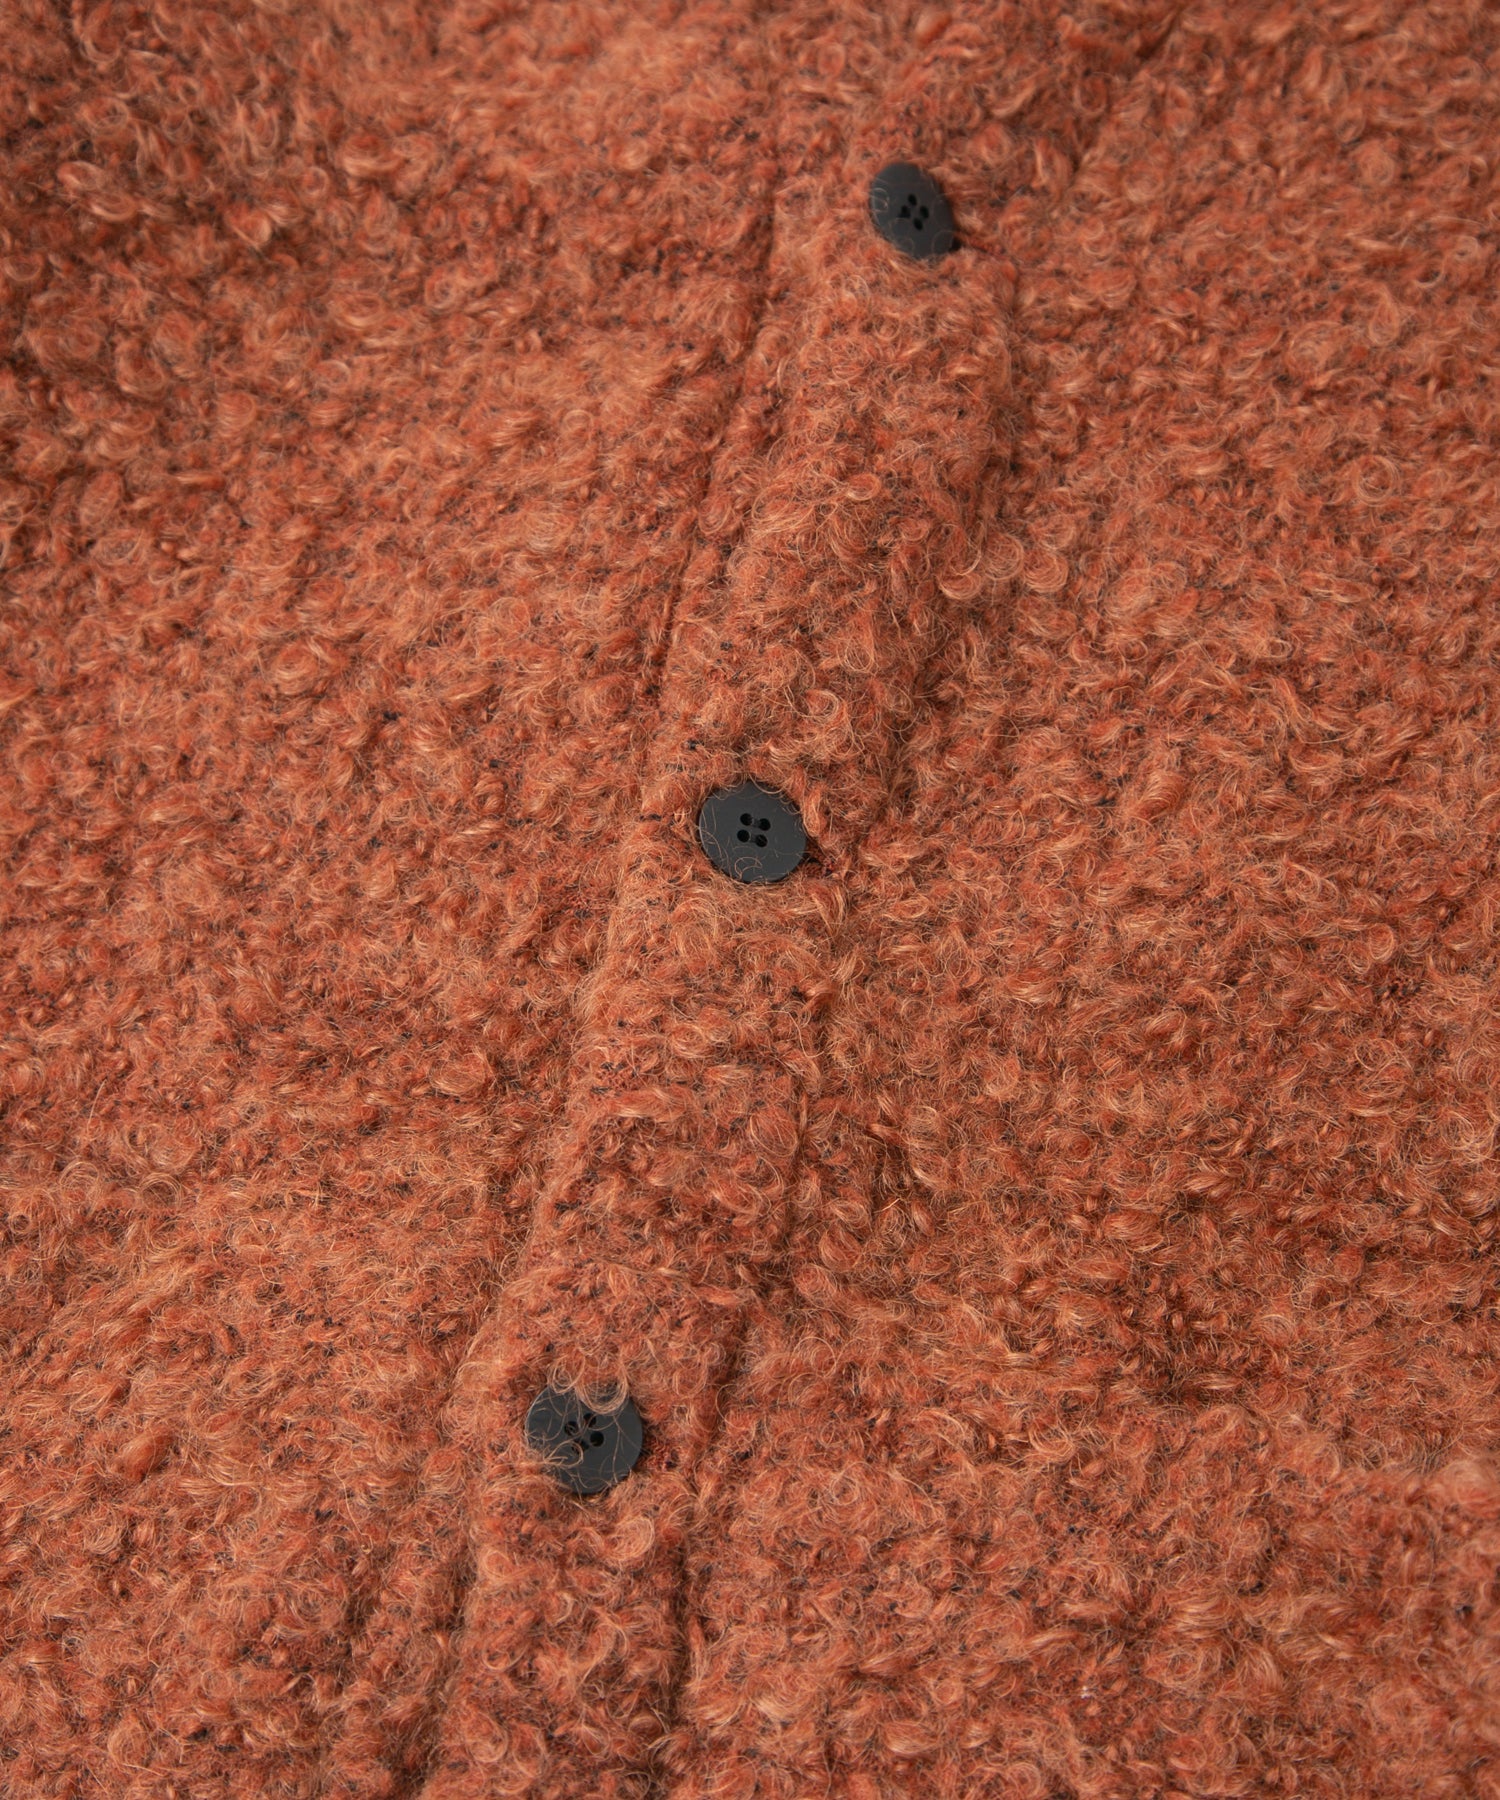 Load image into Gallery viewer, Loop Tweed Knit Long Cardigan - ORANGE